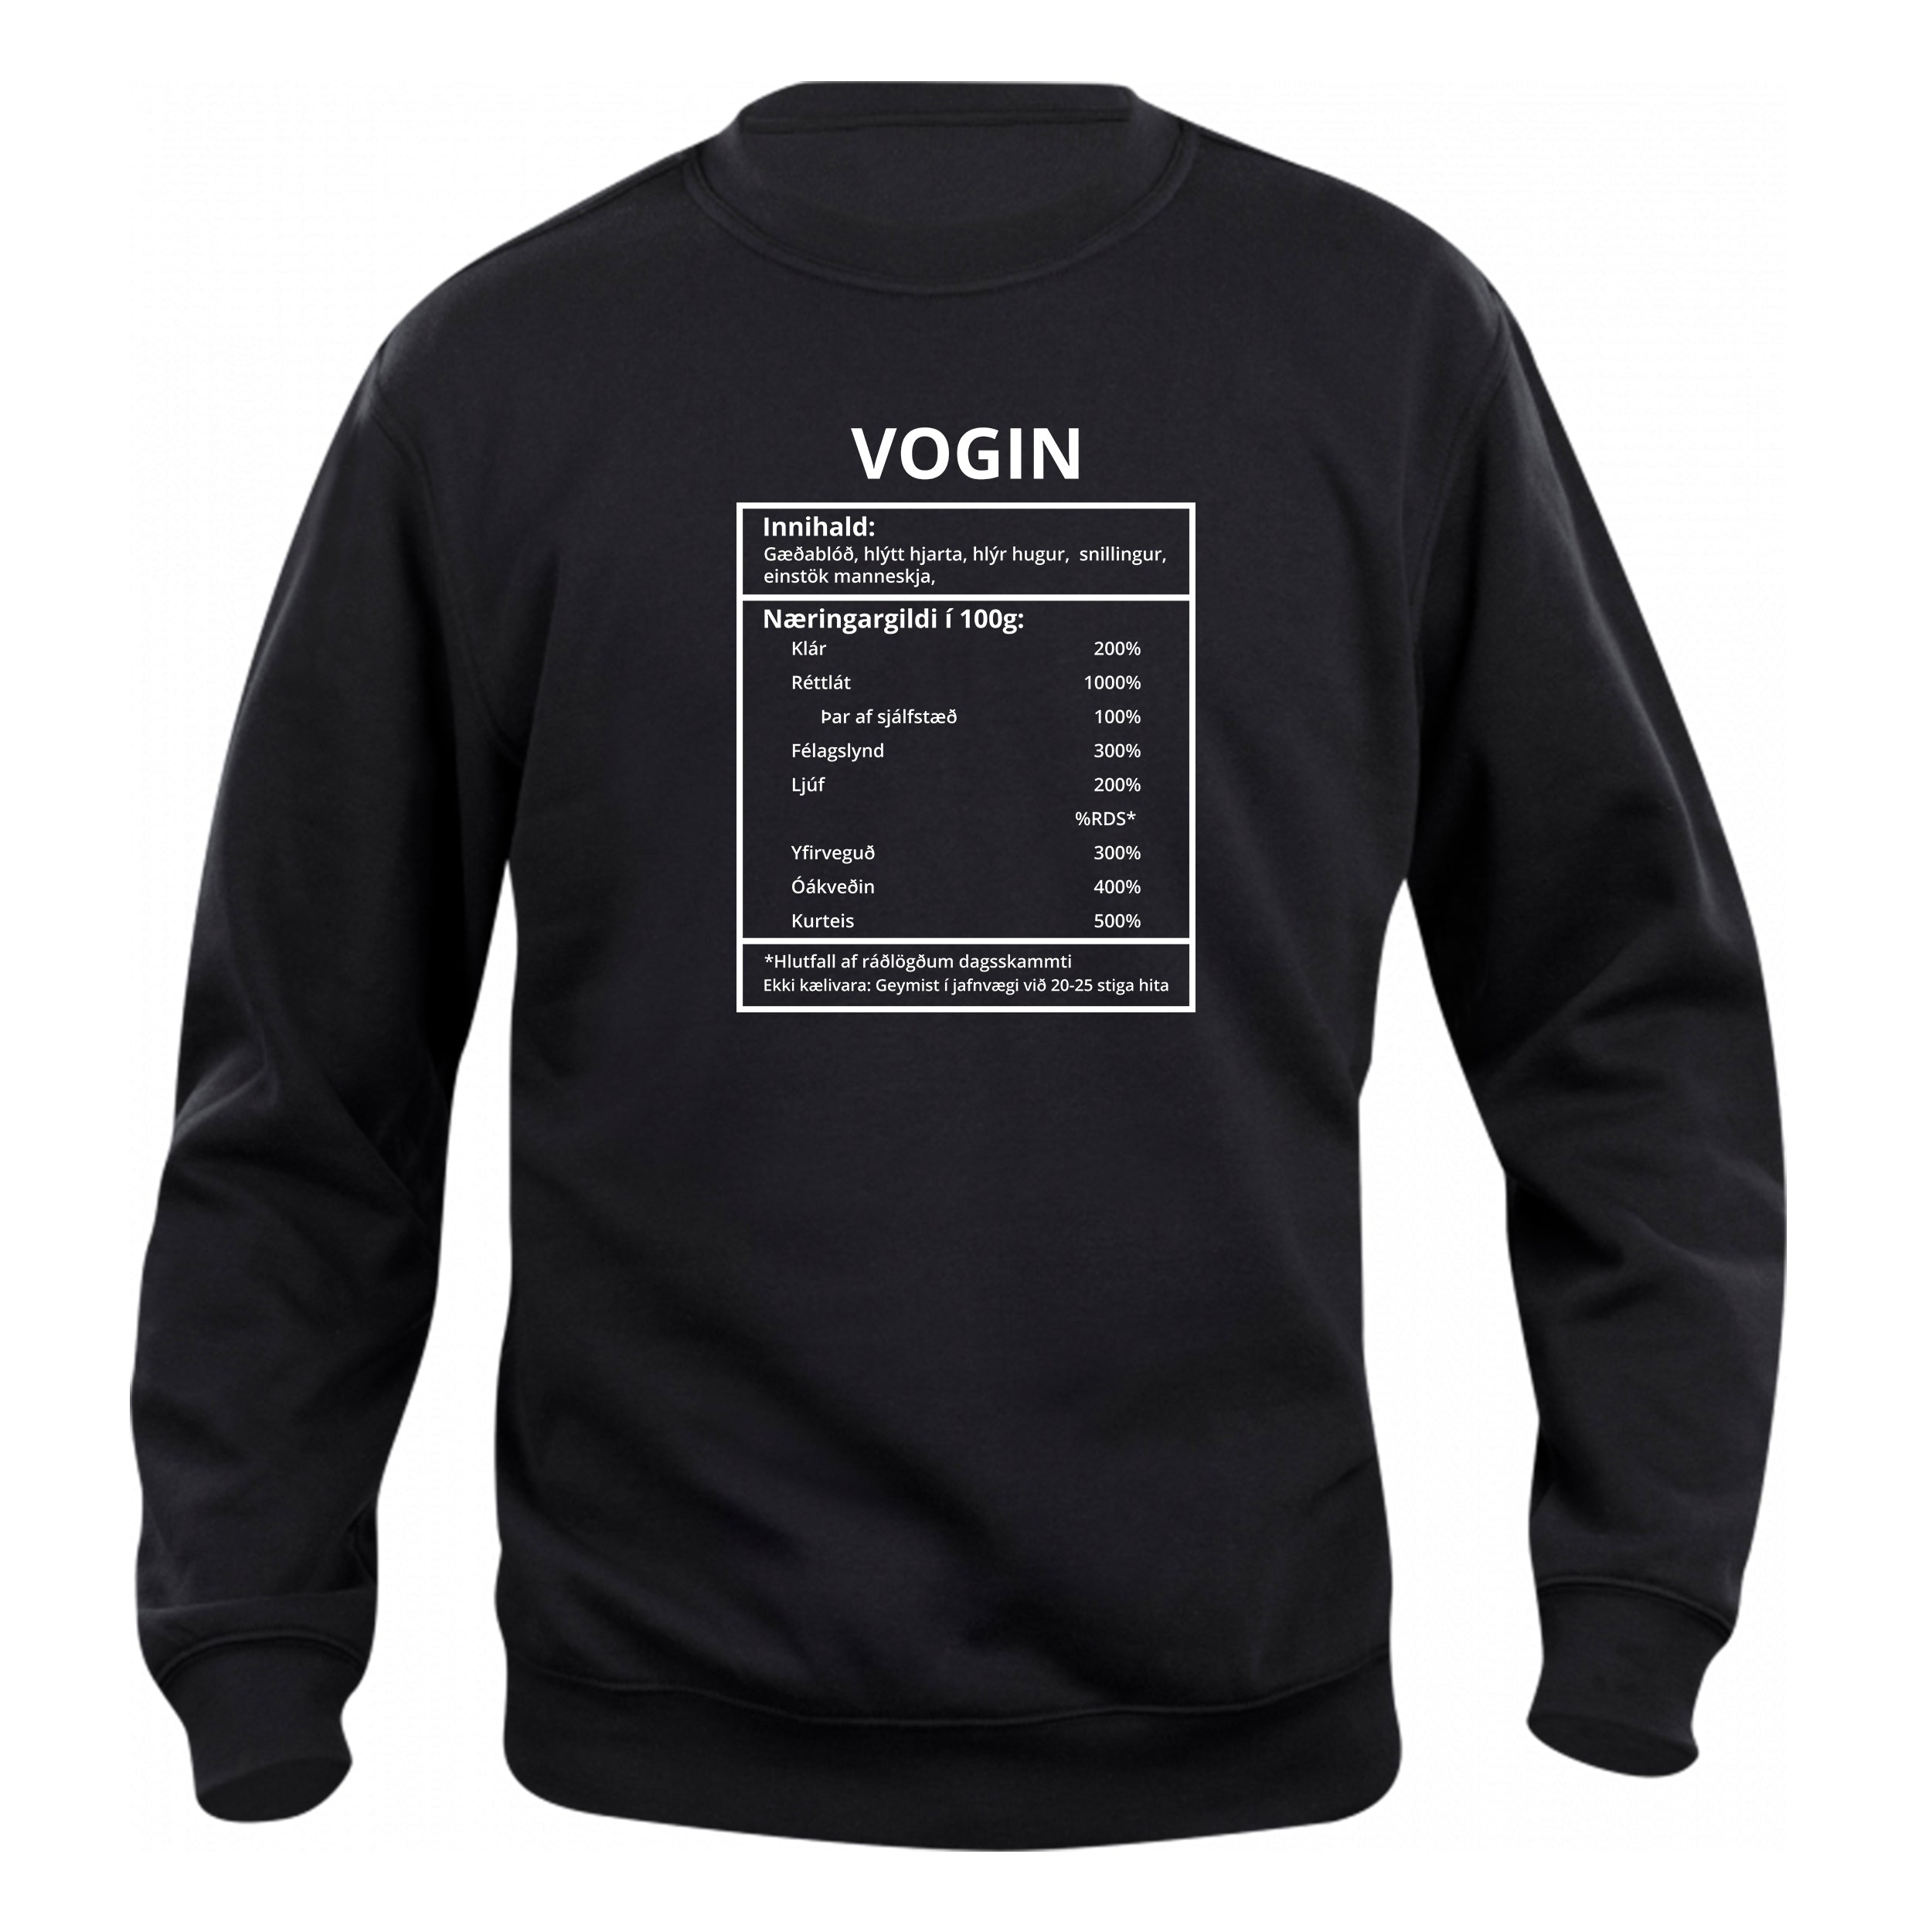 Vogin - sweatshirt